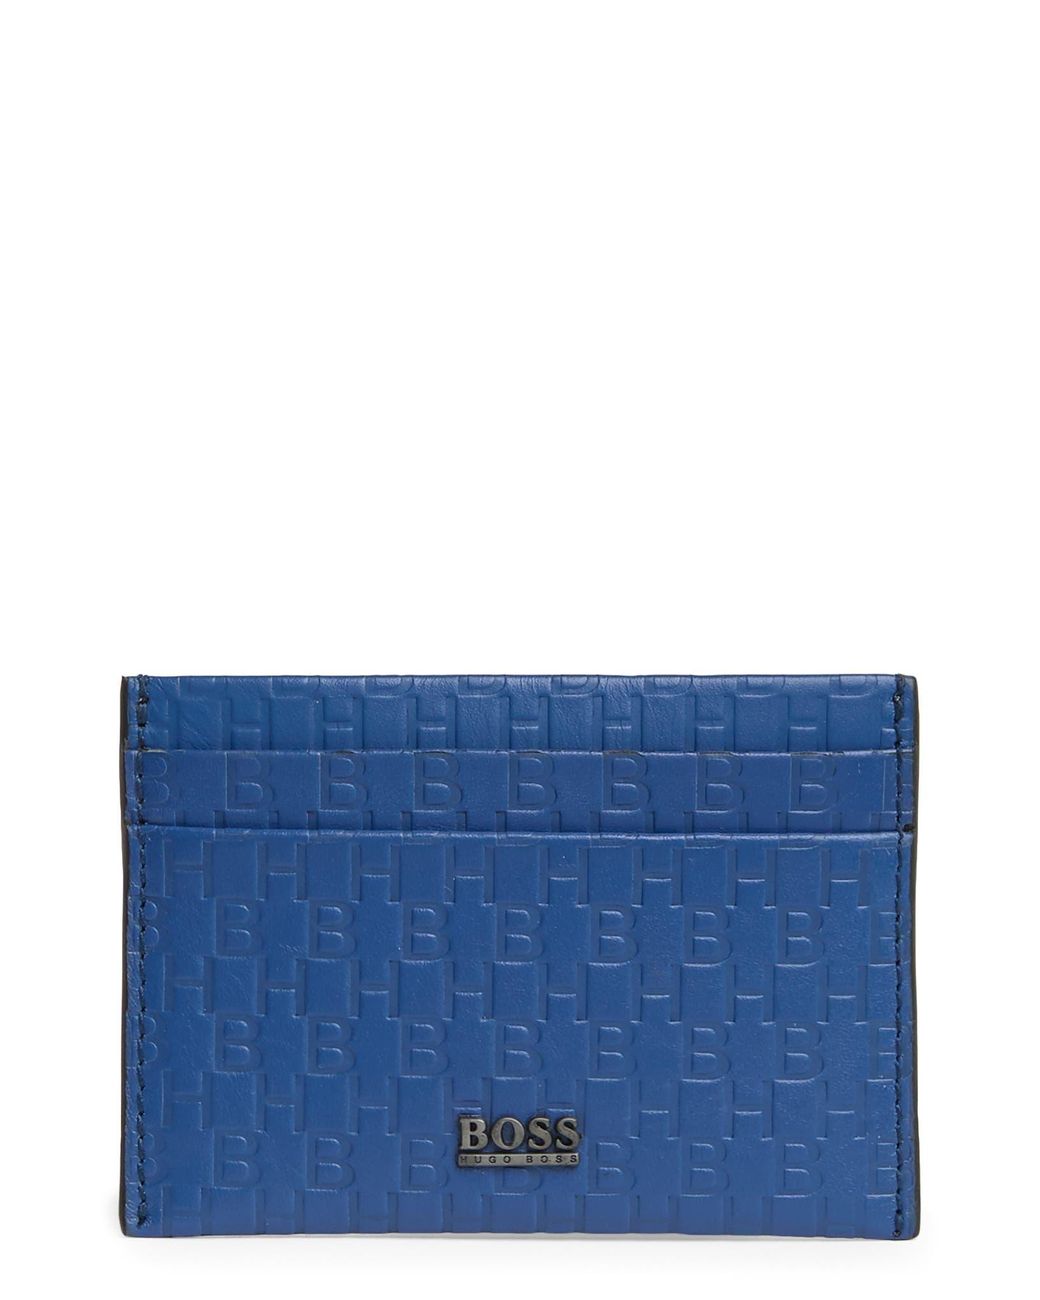 BOSS by HUGO BOSS Monogram Emed Leather Card Case in Blue for Men | Lyst